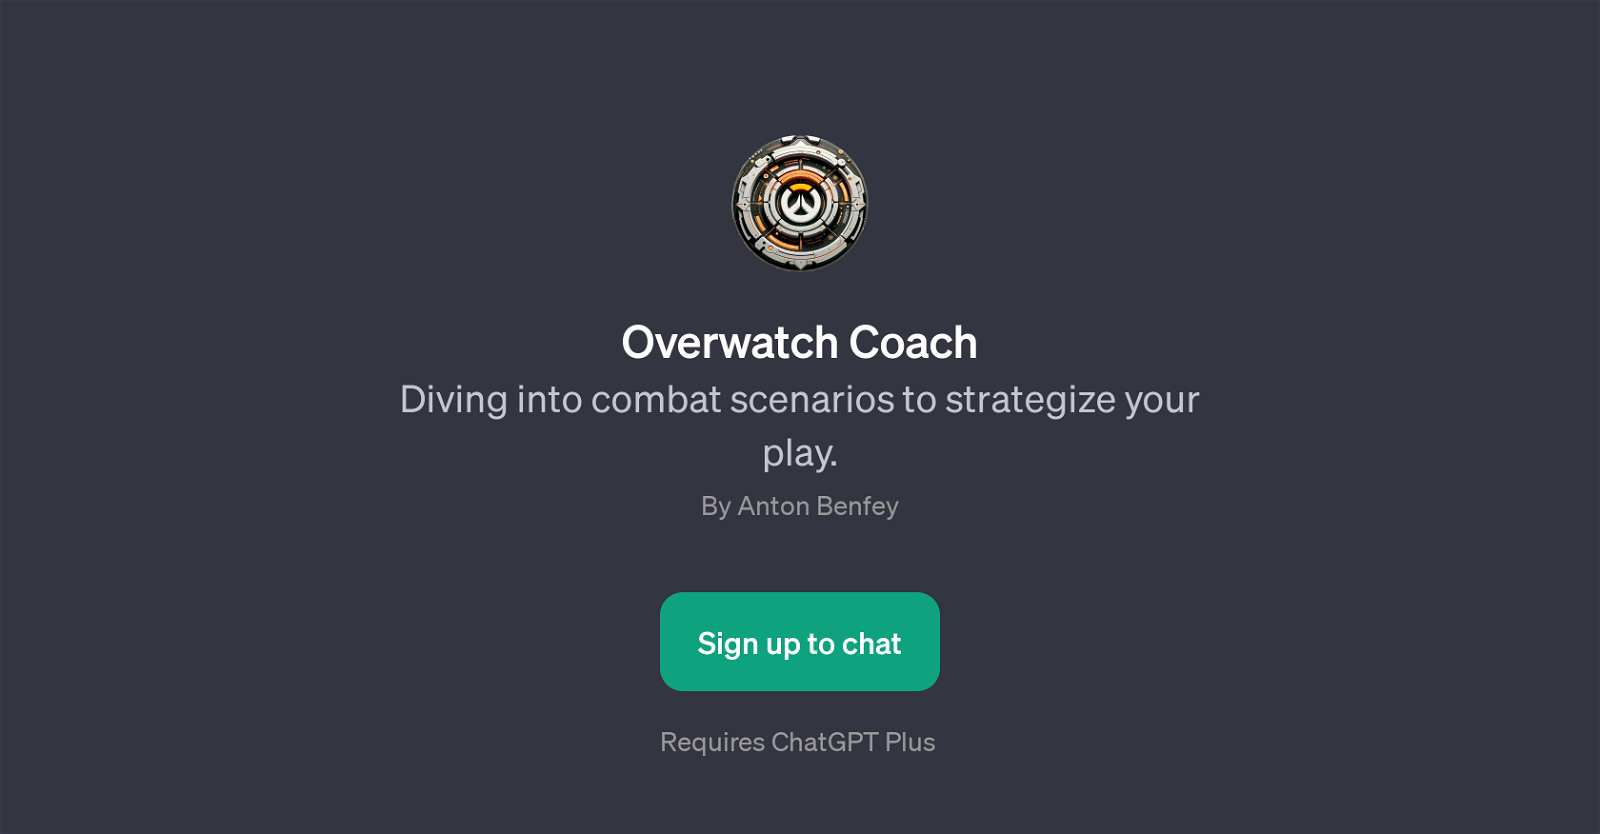 Overwatch Coach website